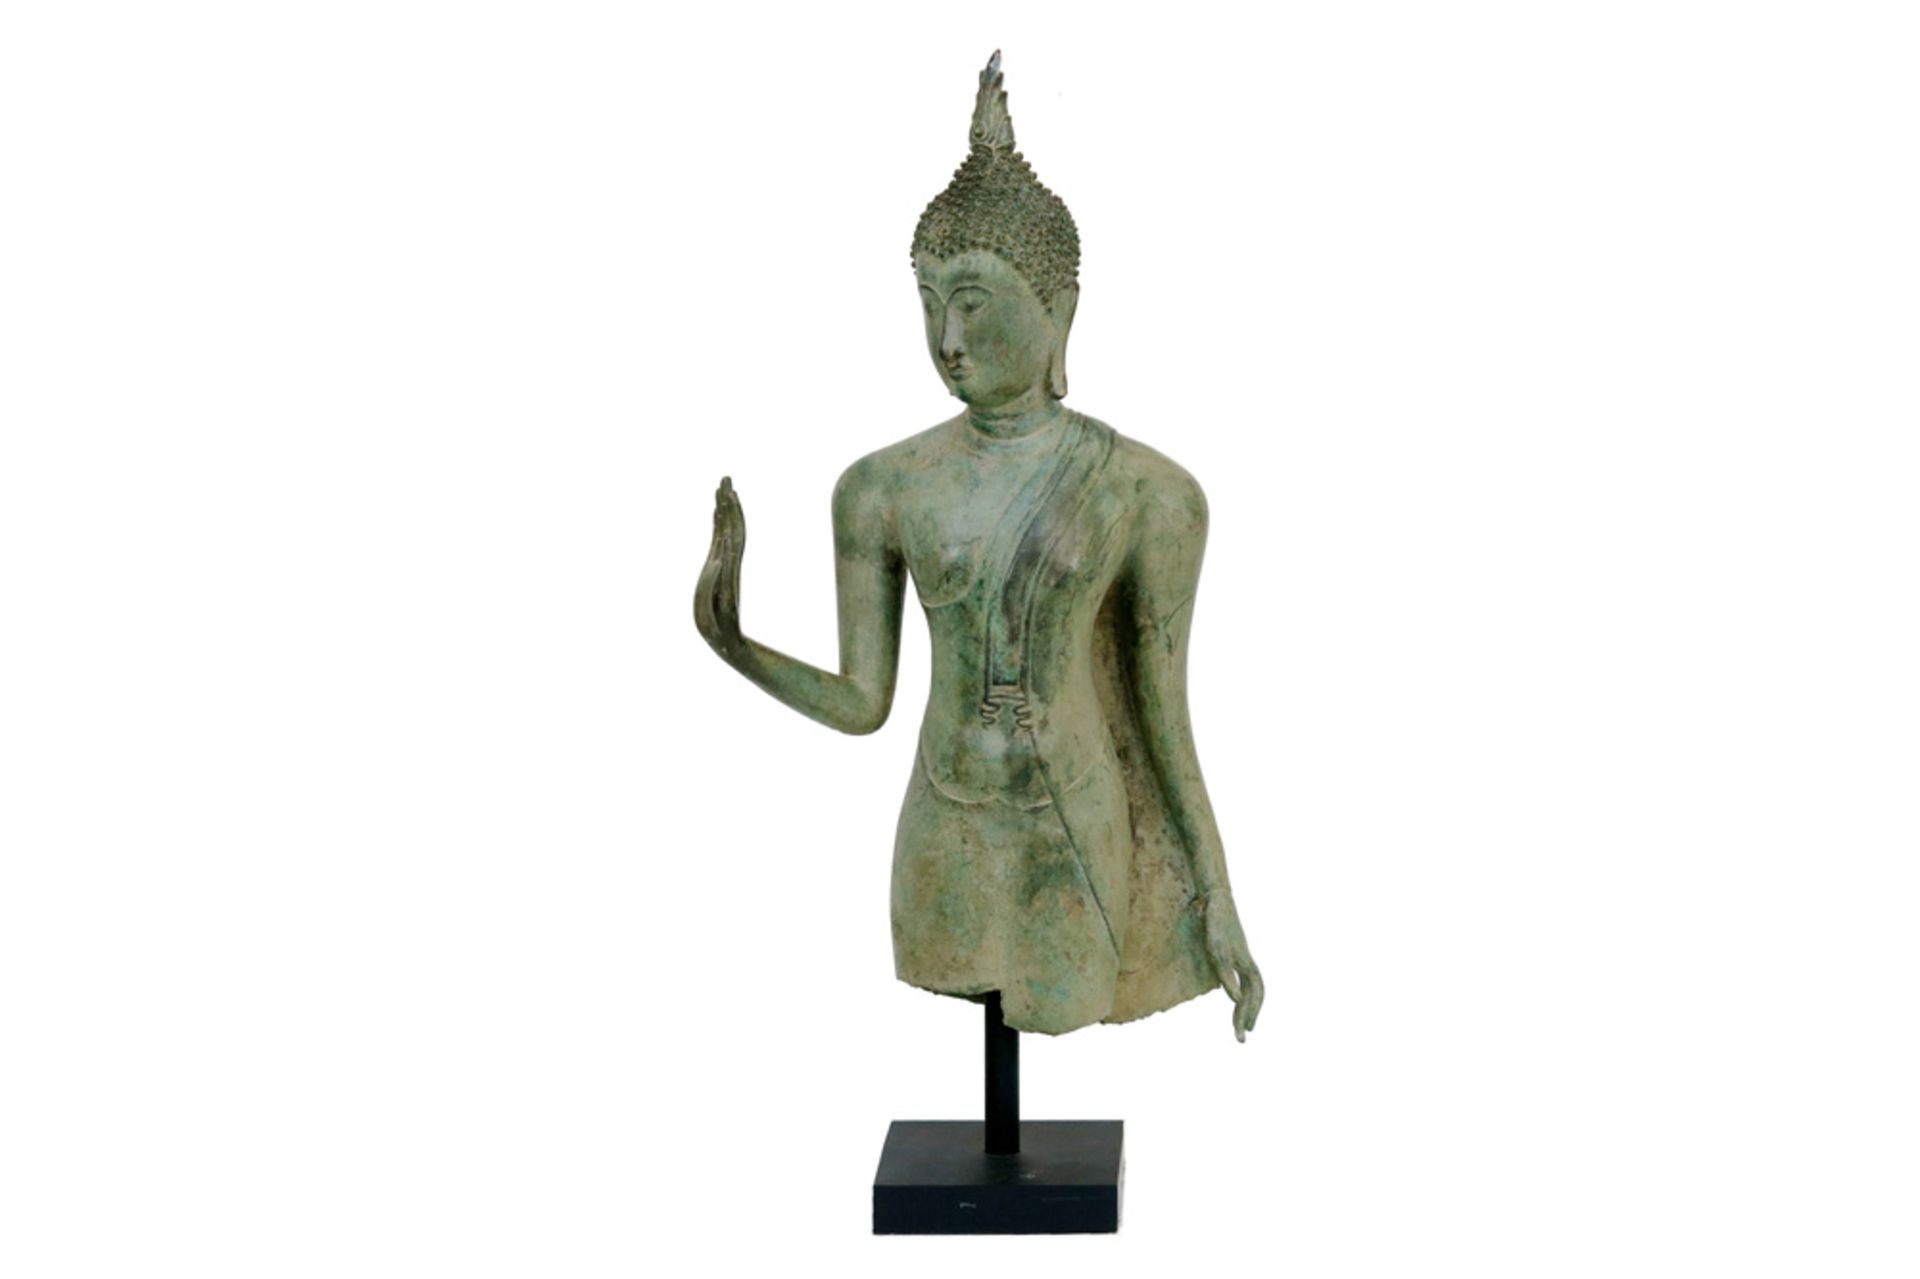 Siamese Ayutthaya style "Buddha" sculpture in bronze || Thaise bronzen sculptuur in Ayutthaya-